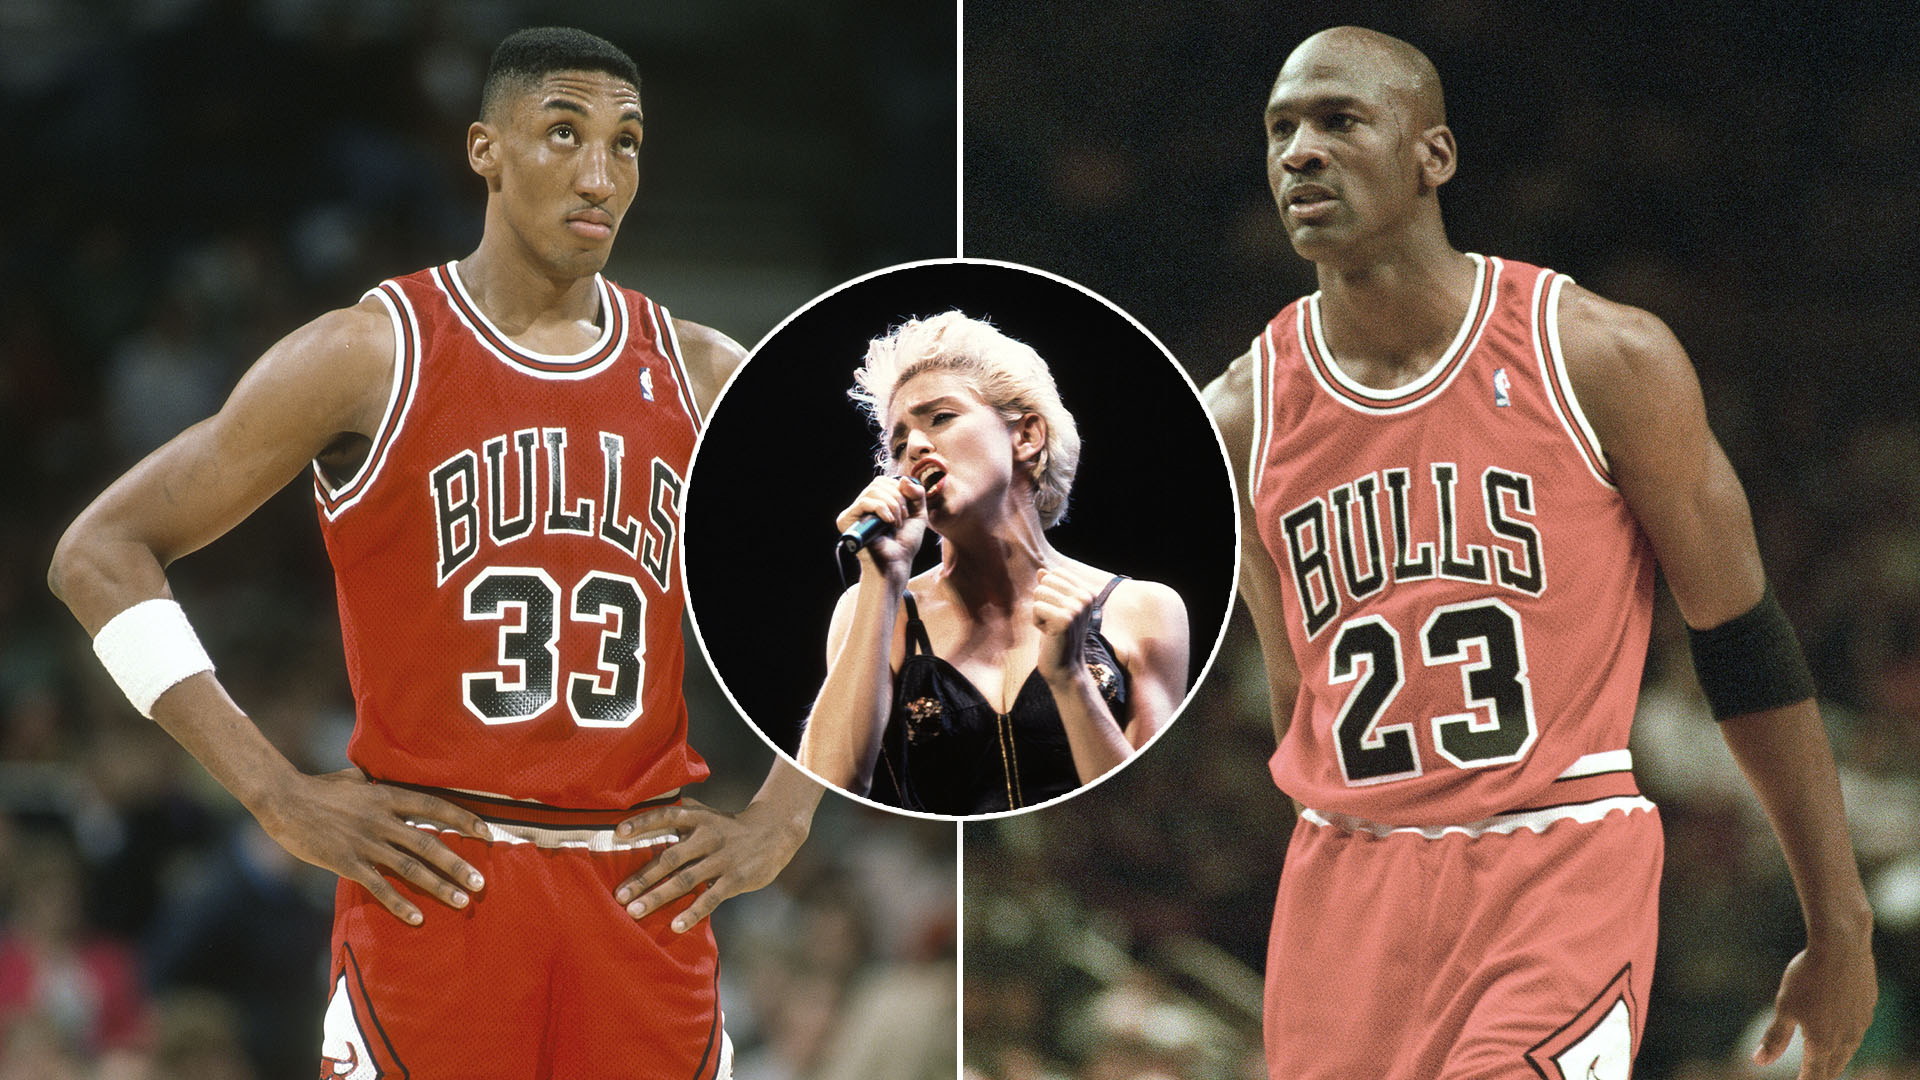 La desconocida relación amorosa entre Scottie Pippen y Madonna que provocó la ira de Michael Jordan 